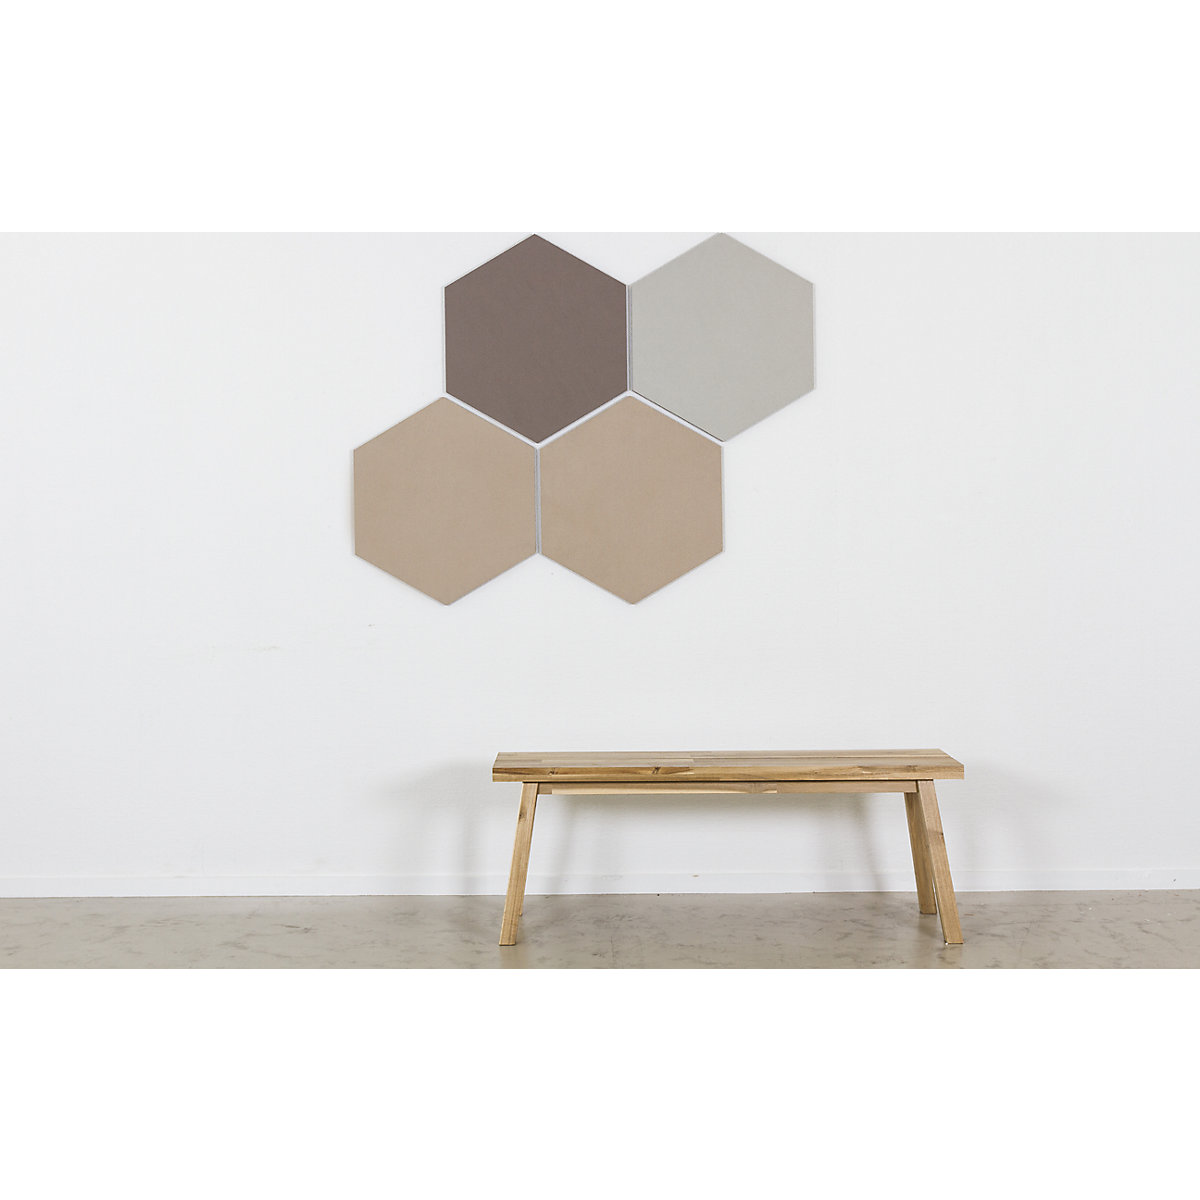 Panou design hexagonal cu prindere cu piuneze – Chameleon (Imagine produs 19)-18